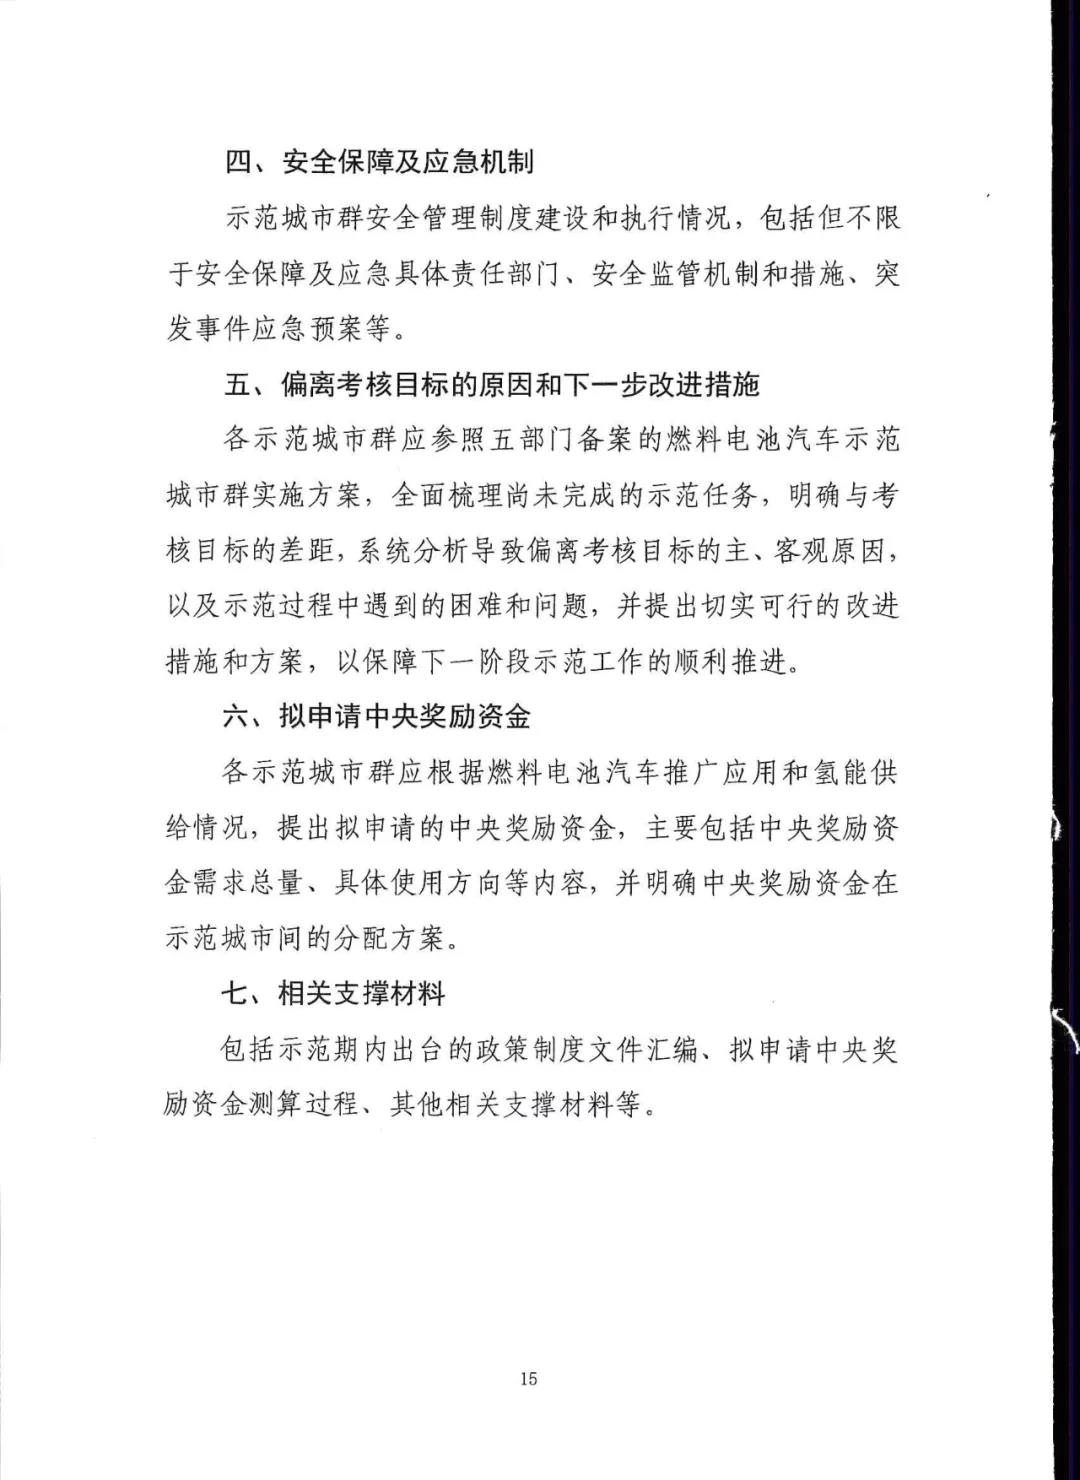 五部委：北京上海广东启动燃料电池汽车示范应用工作